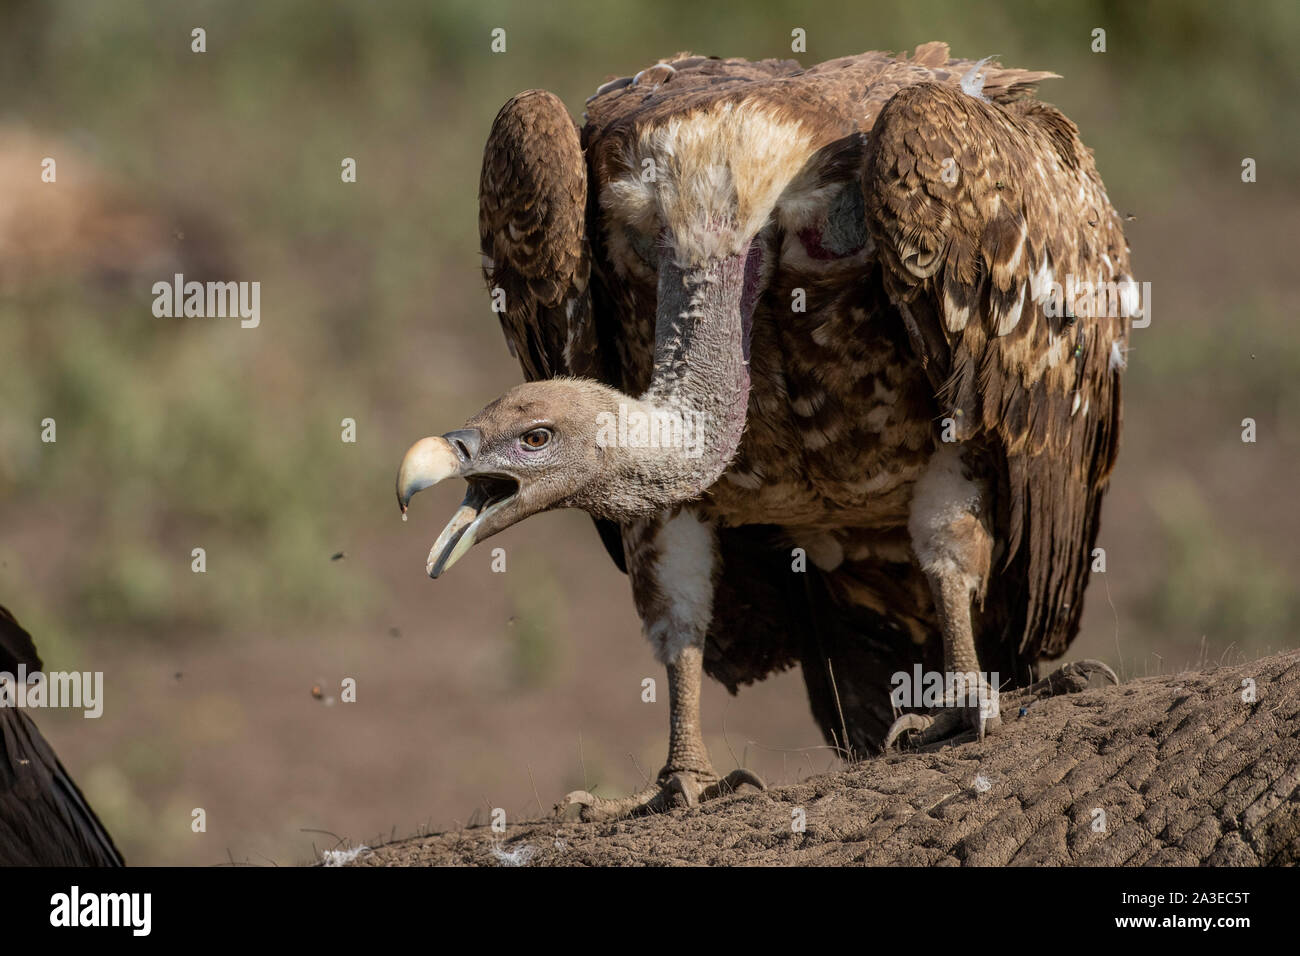 L'Afrique, Tanzanie, Ngorongoro Conservation Area, vautours à dos blanc (Gyps africanus) se nourrissent de jeunes près de la carcasse de l'éléphant Plaines Ndutu Banque D'Images